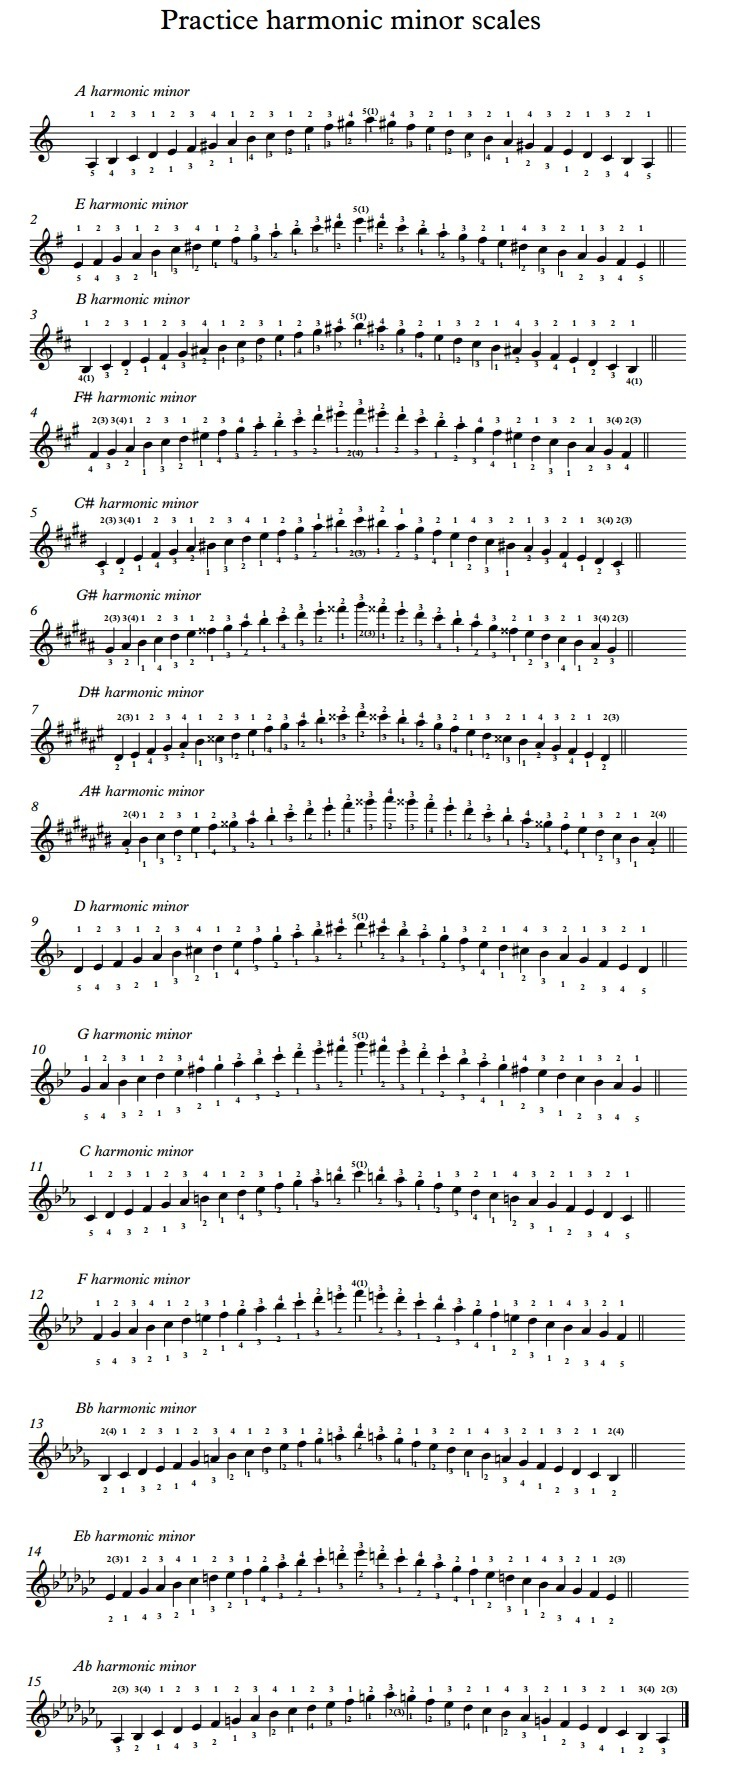 Practice harmonic minor scales.jpg